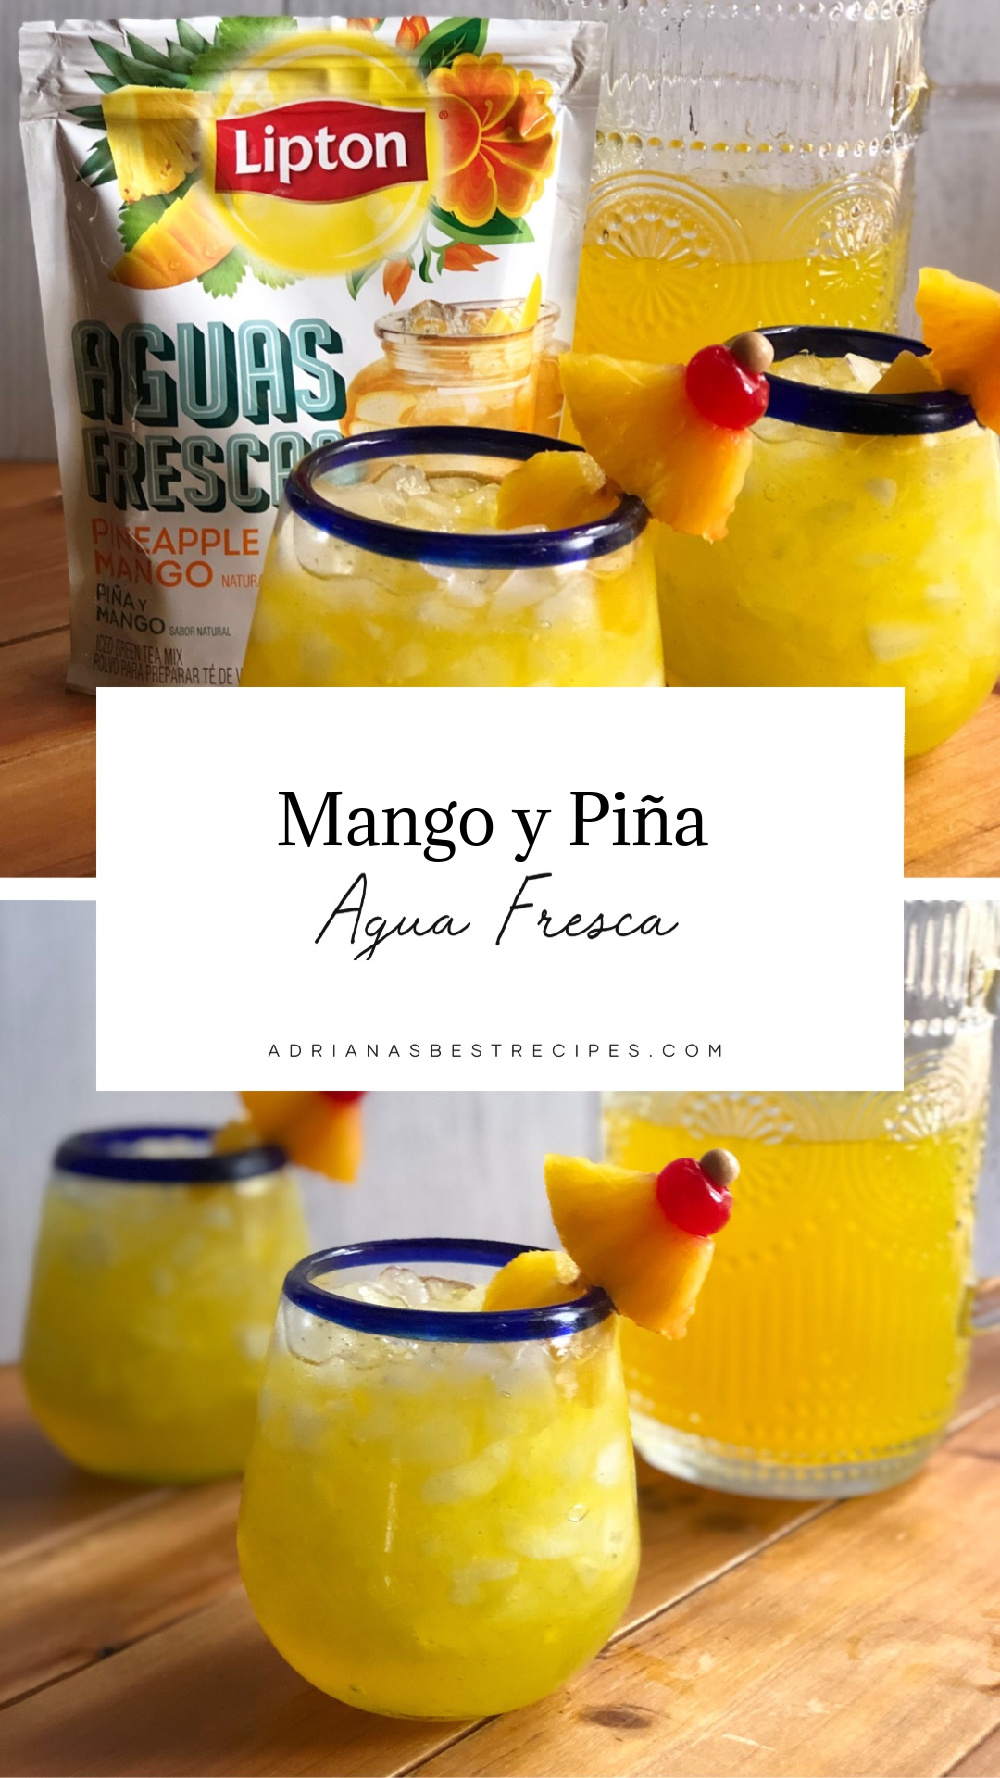 Agua fresca de mango y piña servida con cerezas y trocitos de piña fresca